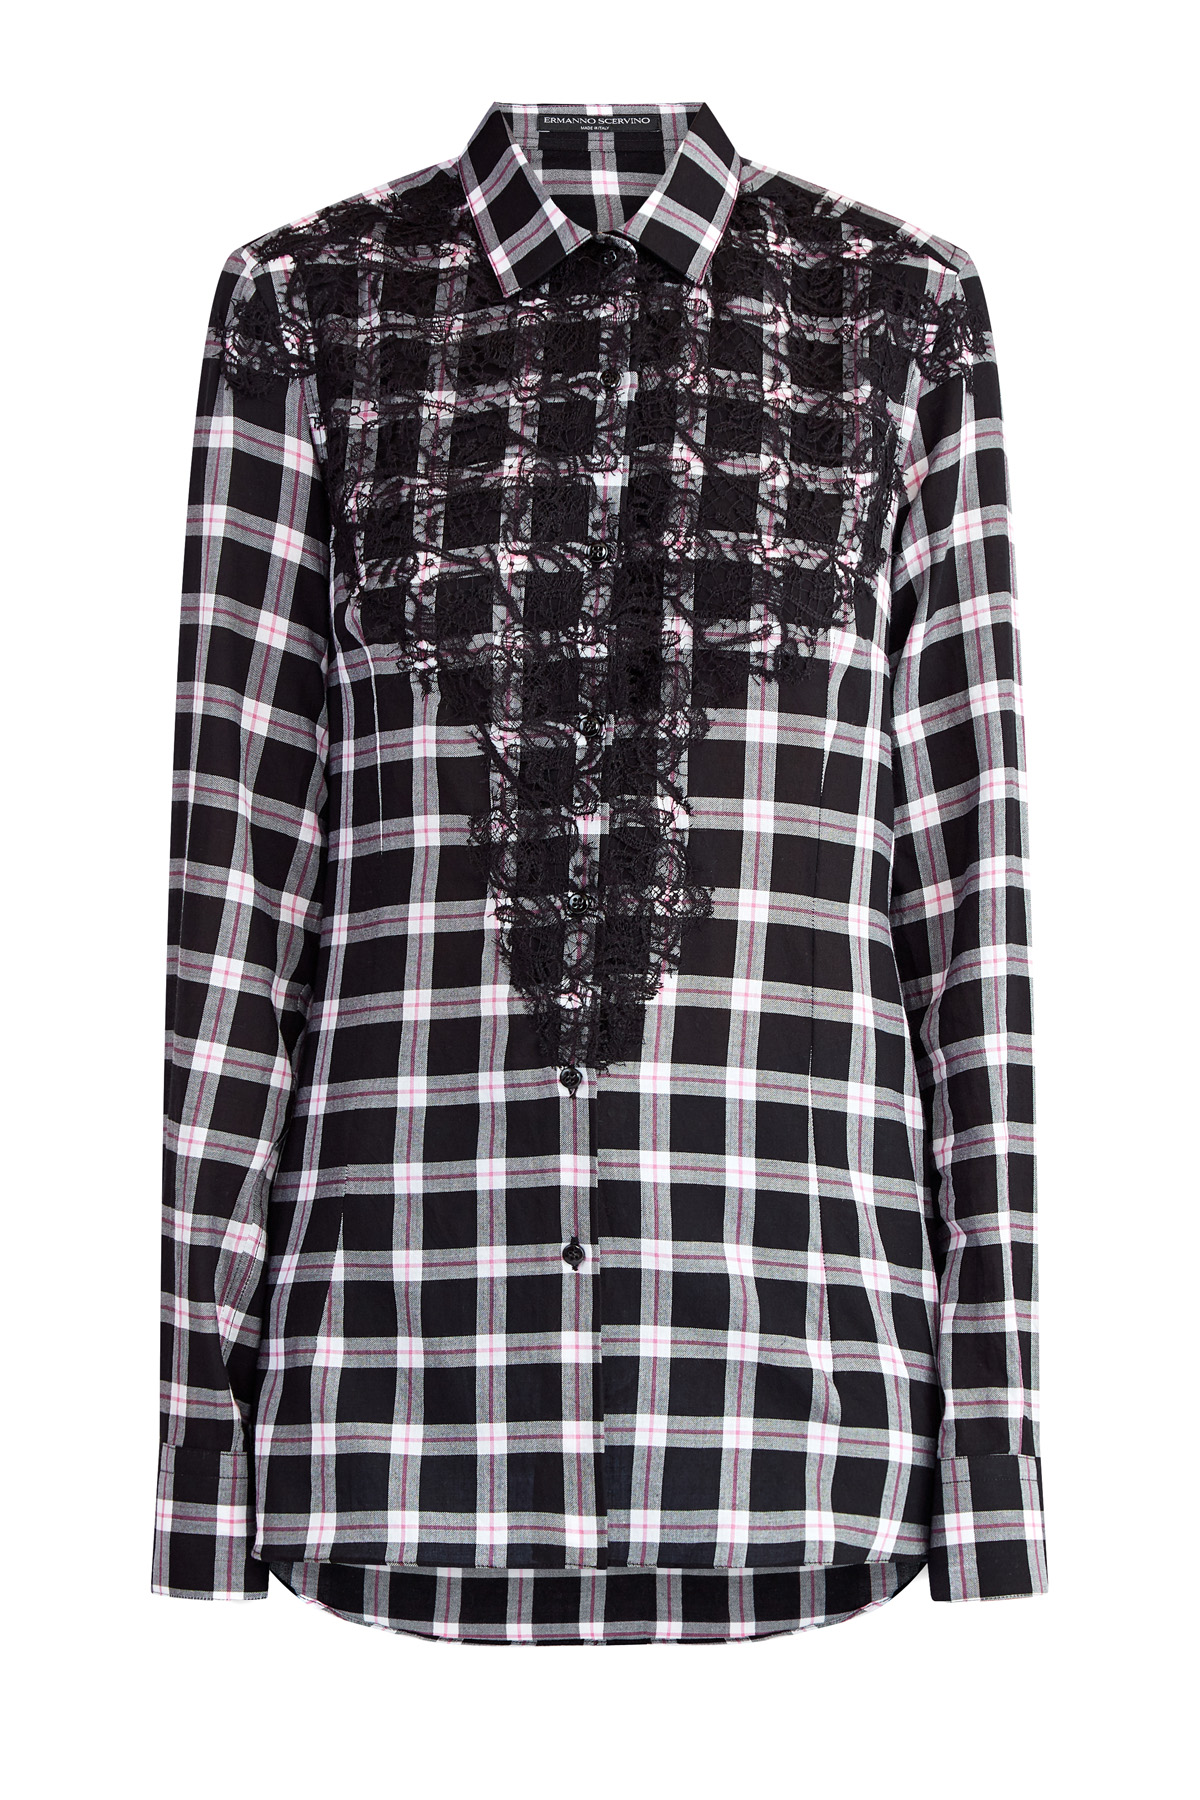 Приталенная рубашка из хлопка с отделкой кружевом ручной работы ERMANNO SCERVINO, цвет черно-белый, размер 40;44 - фото 1